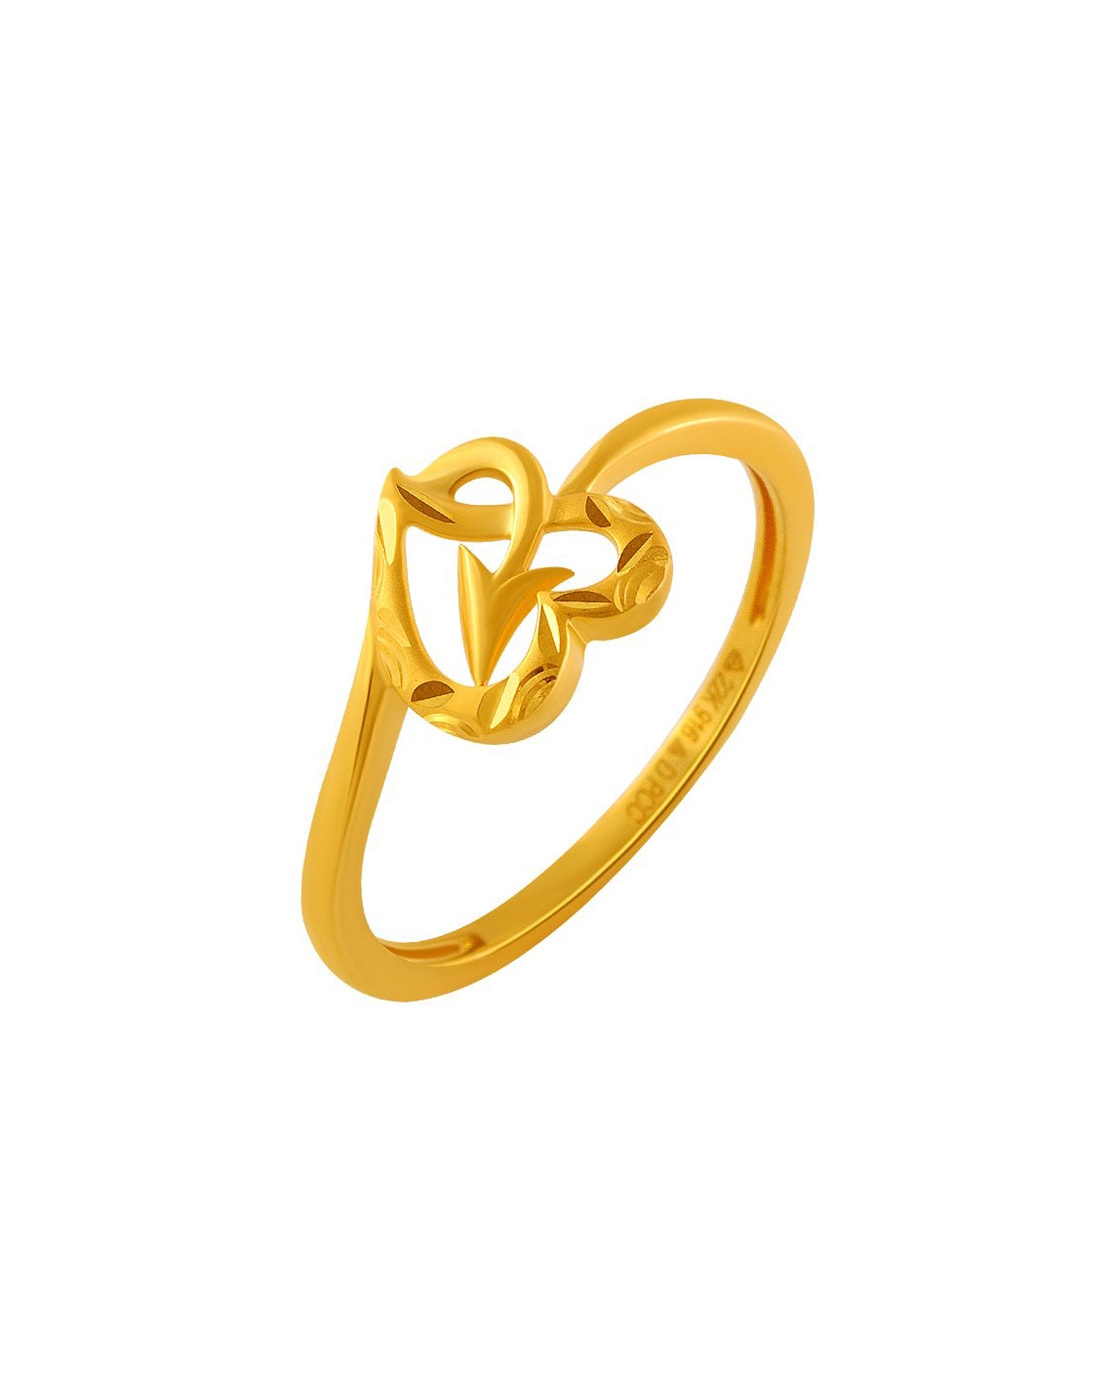 Noa Gold Bangles - Senco Gold & Diamonds | sencogoldanddiamonds.com